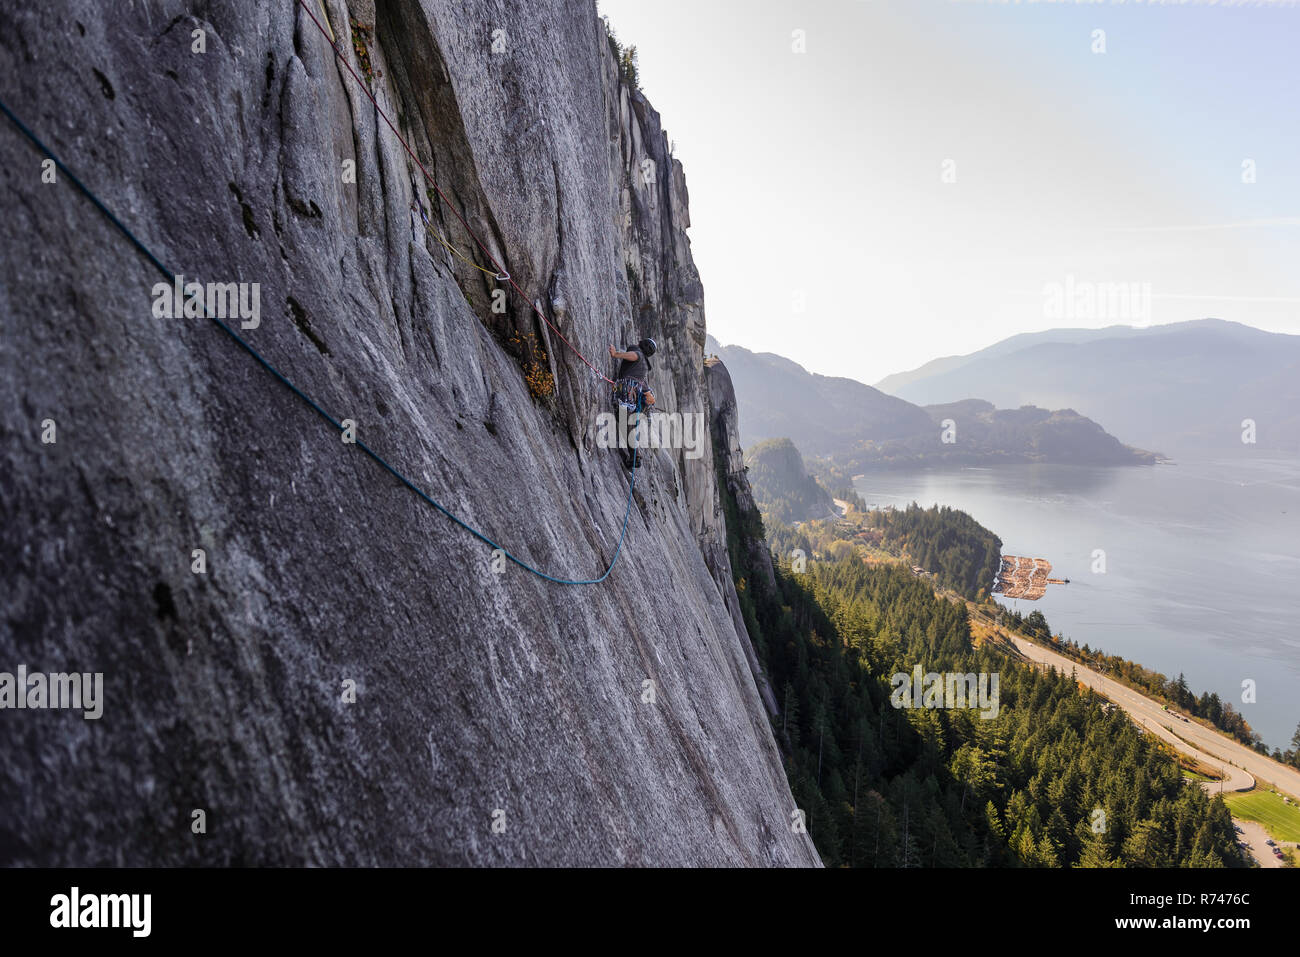 Junge männliche Kletterer klettern Fels, Erhöhte Ansicht, der Chief, Squamish, British Columbia, Kanada Stockfoto